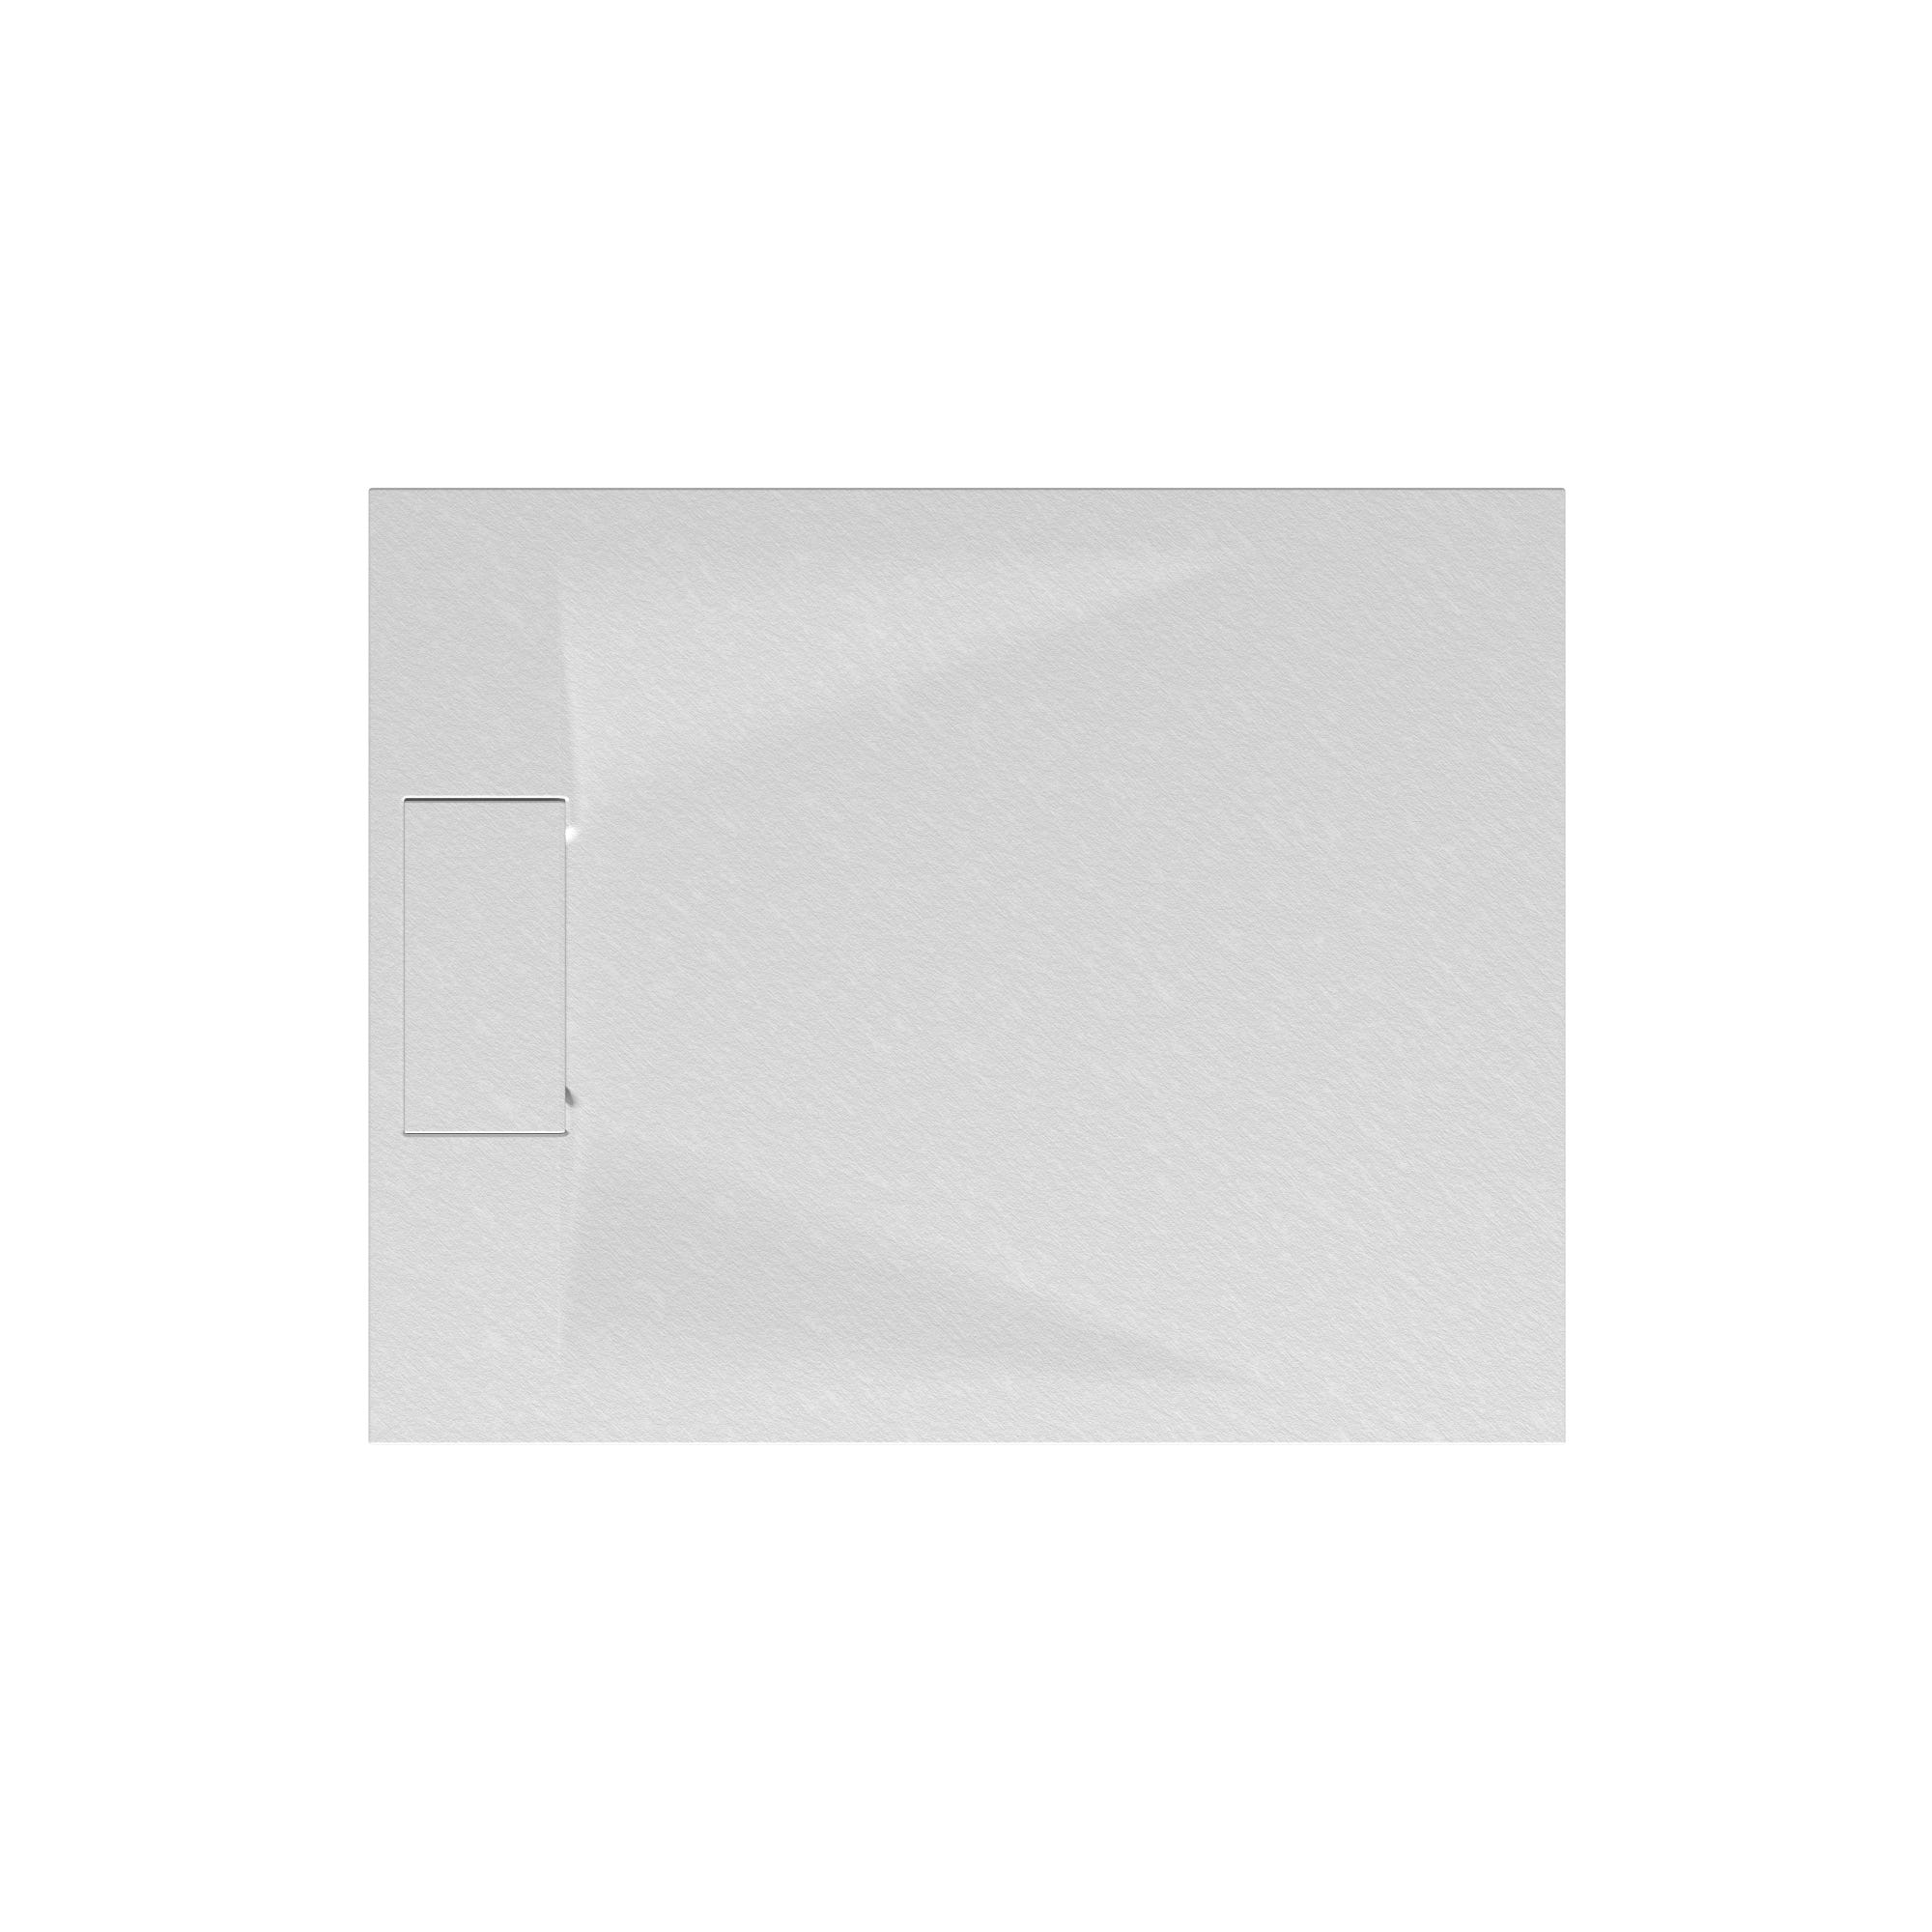 Schulte receveur de douche 80 x 100 x 3,2cm, blanc effet pierre ultra légers, rectangulaire, extra plat à poser ou à encastrer, bac à douche 1